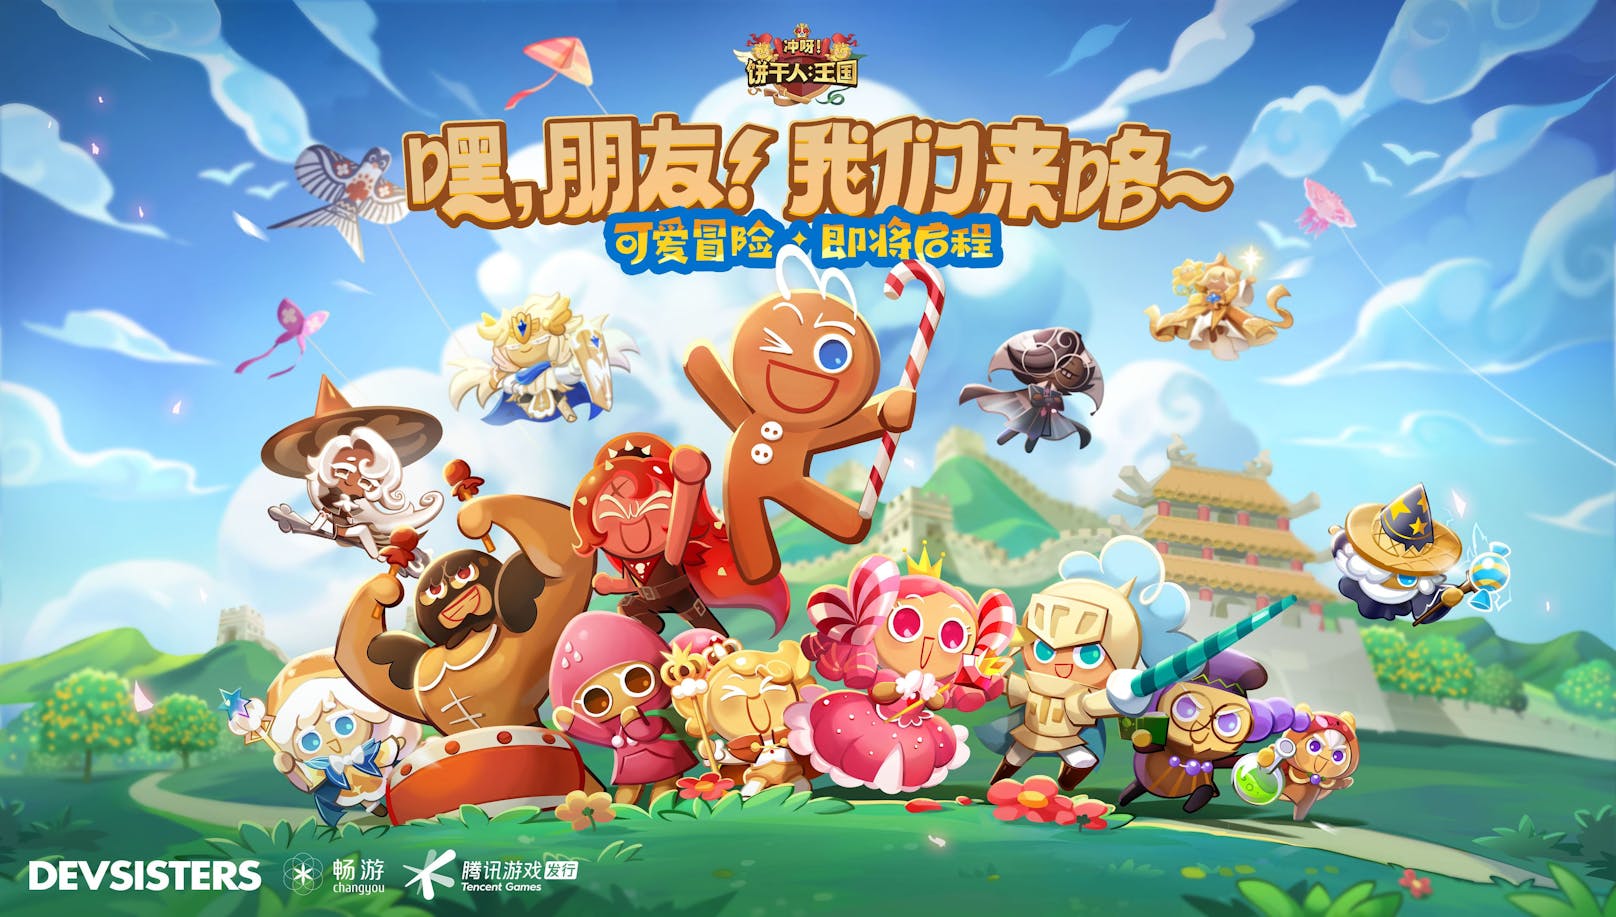 Devsisters bringt zusammen mit Tencent Games und Changyou "Cookie Run: Kingdom" nun auch nach China.